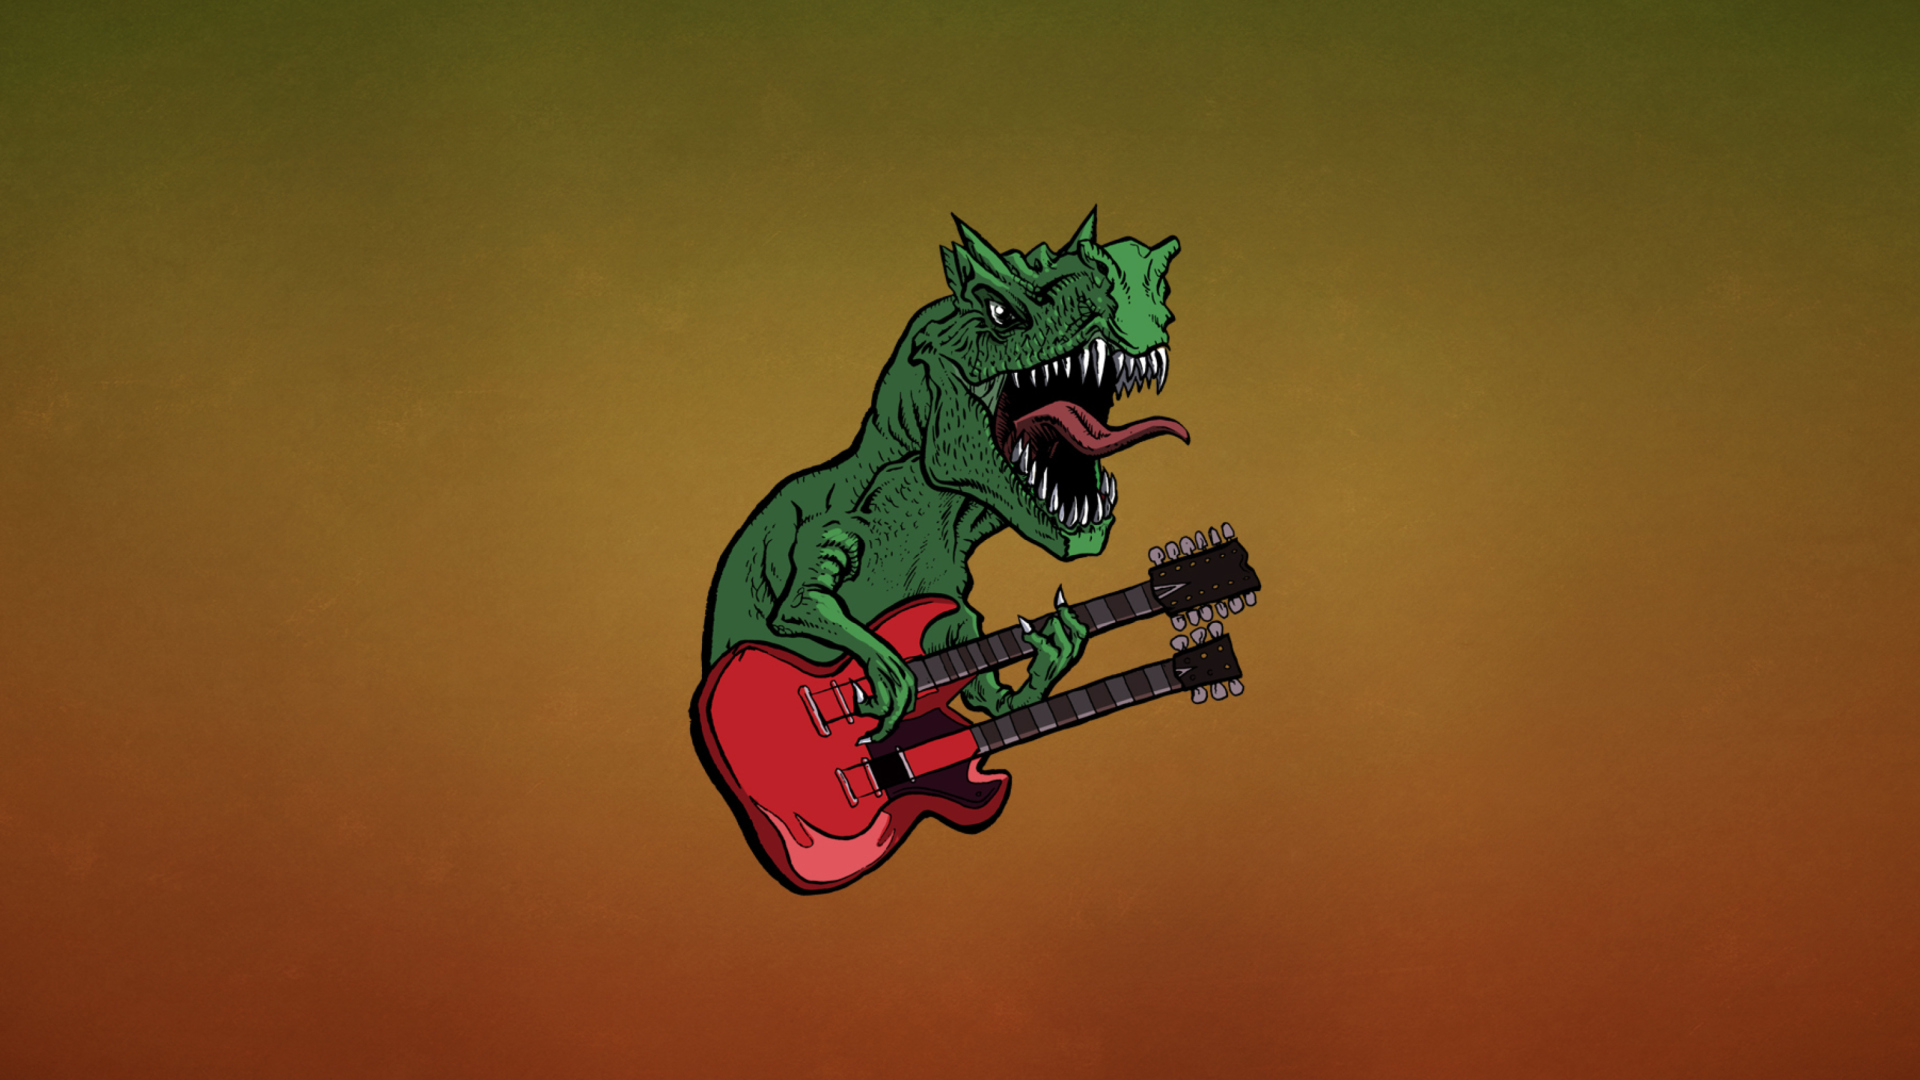 Dinosaur And Guitar Illustration wallpaper 1920x1080